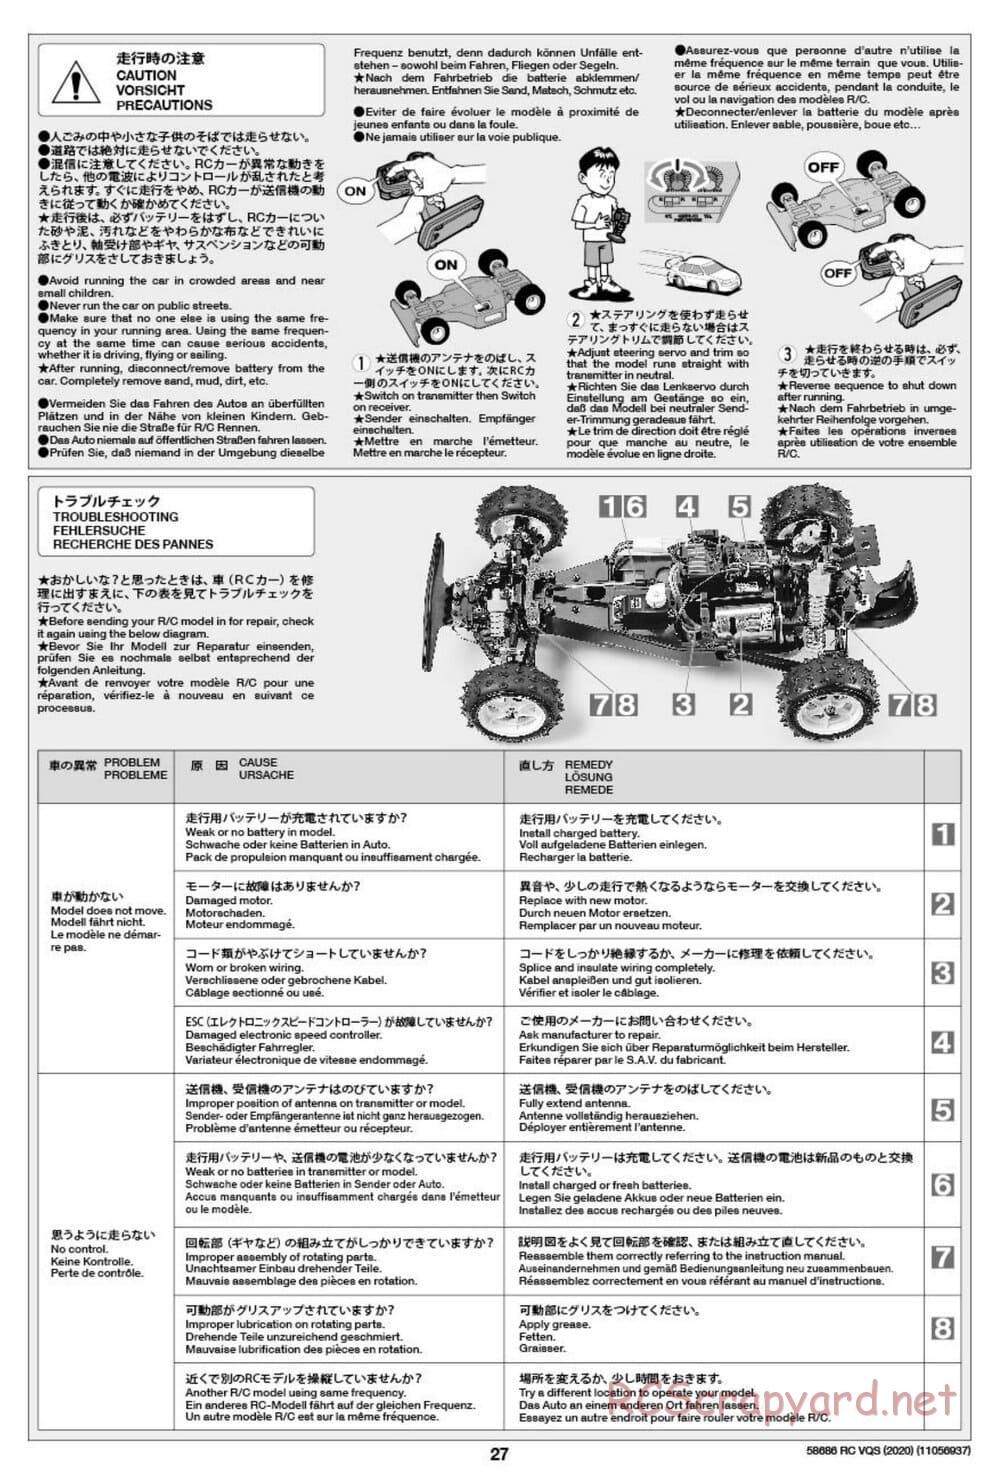 Tamiya - VQS (2020) - AV Chassis - Manual - Page 27